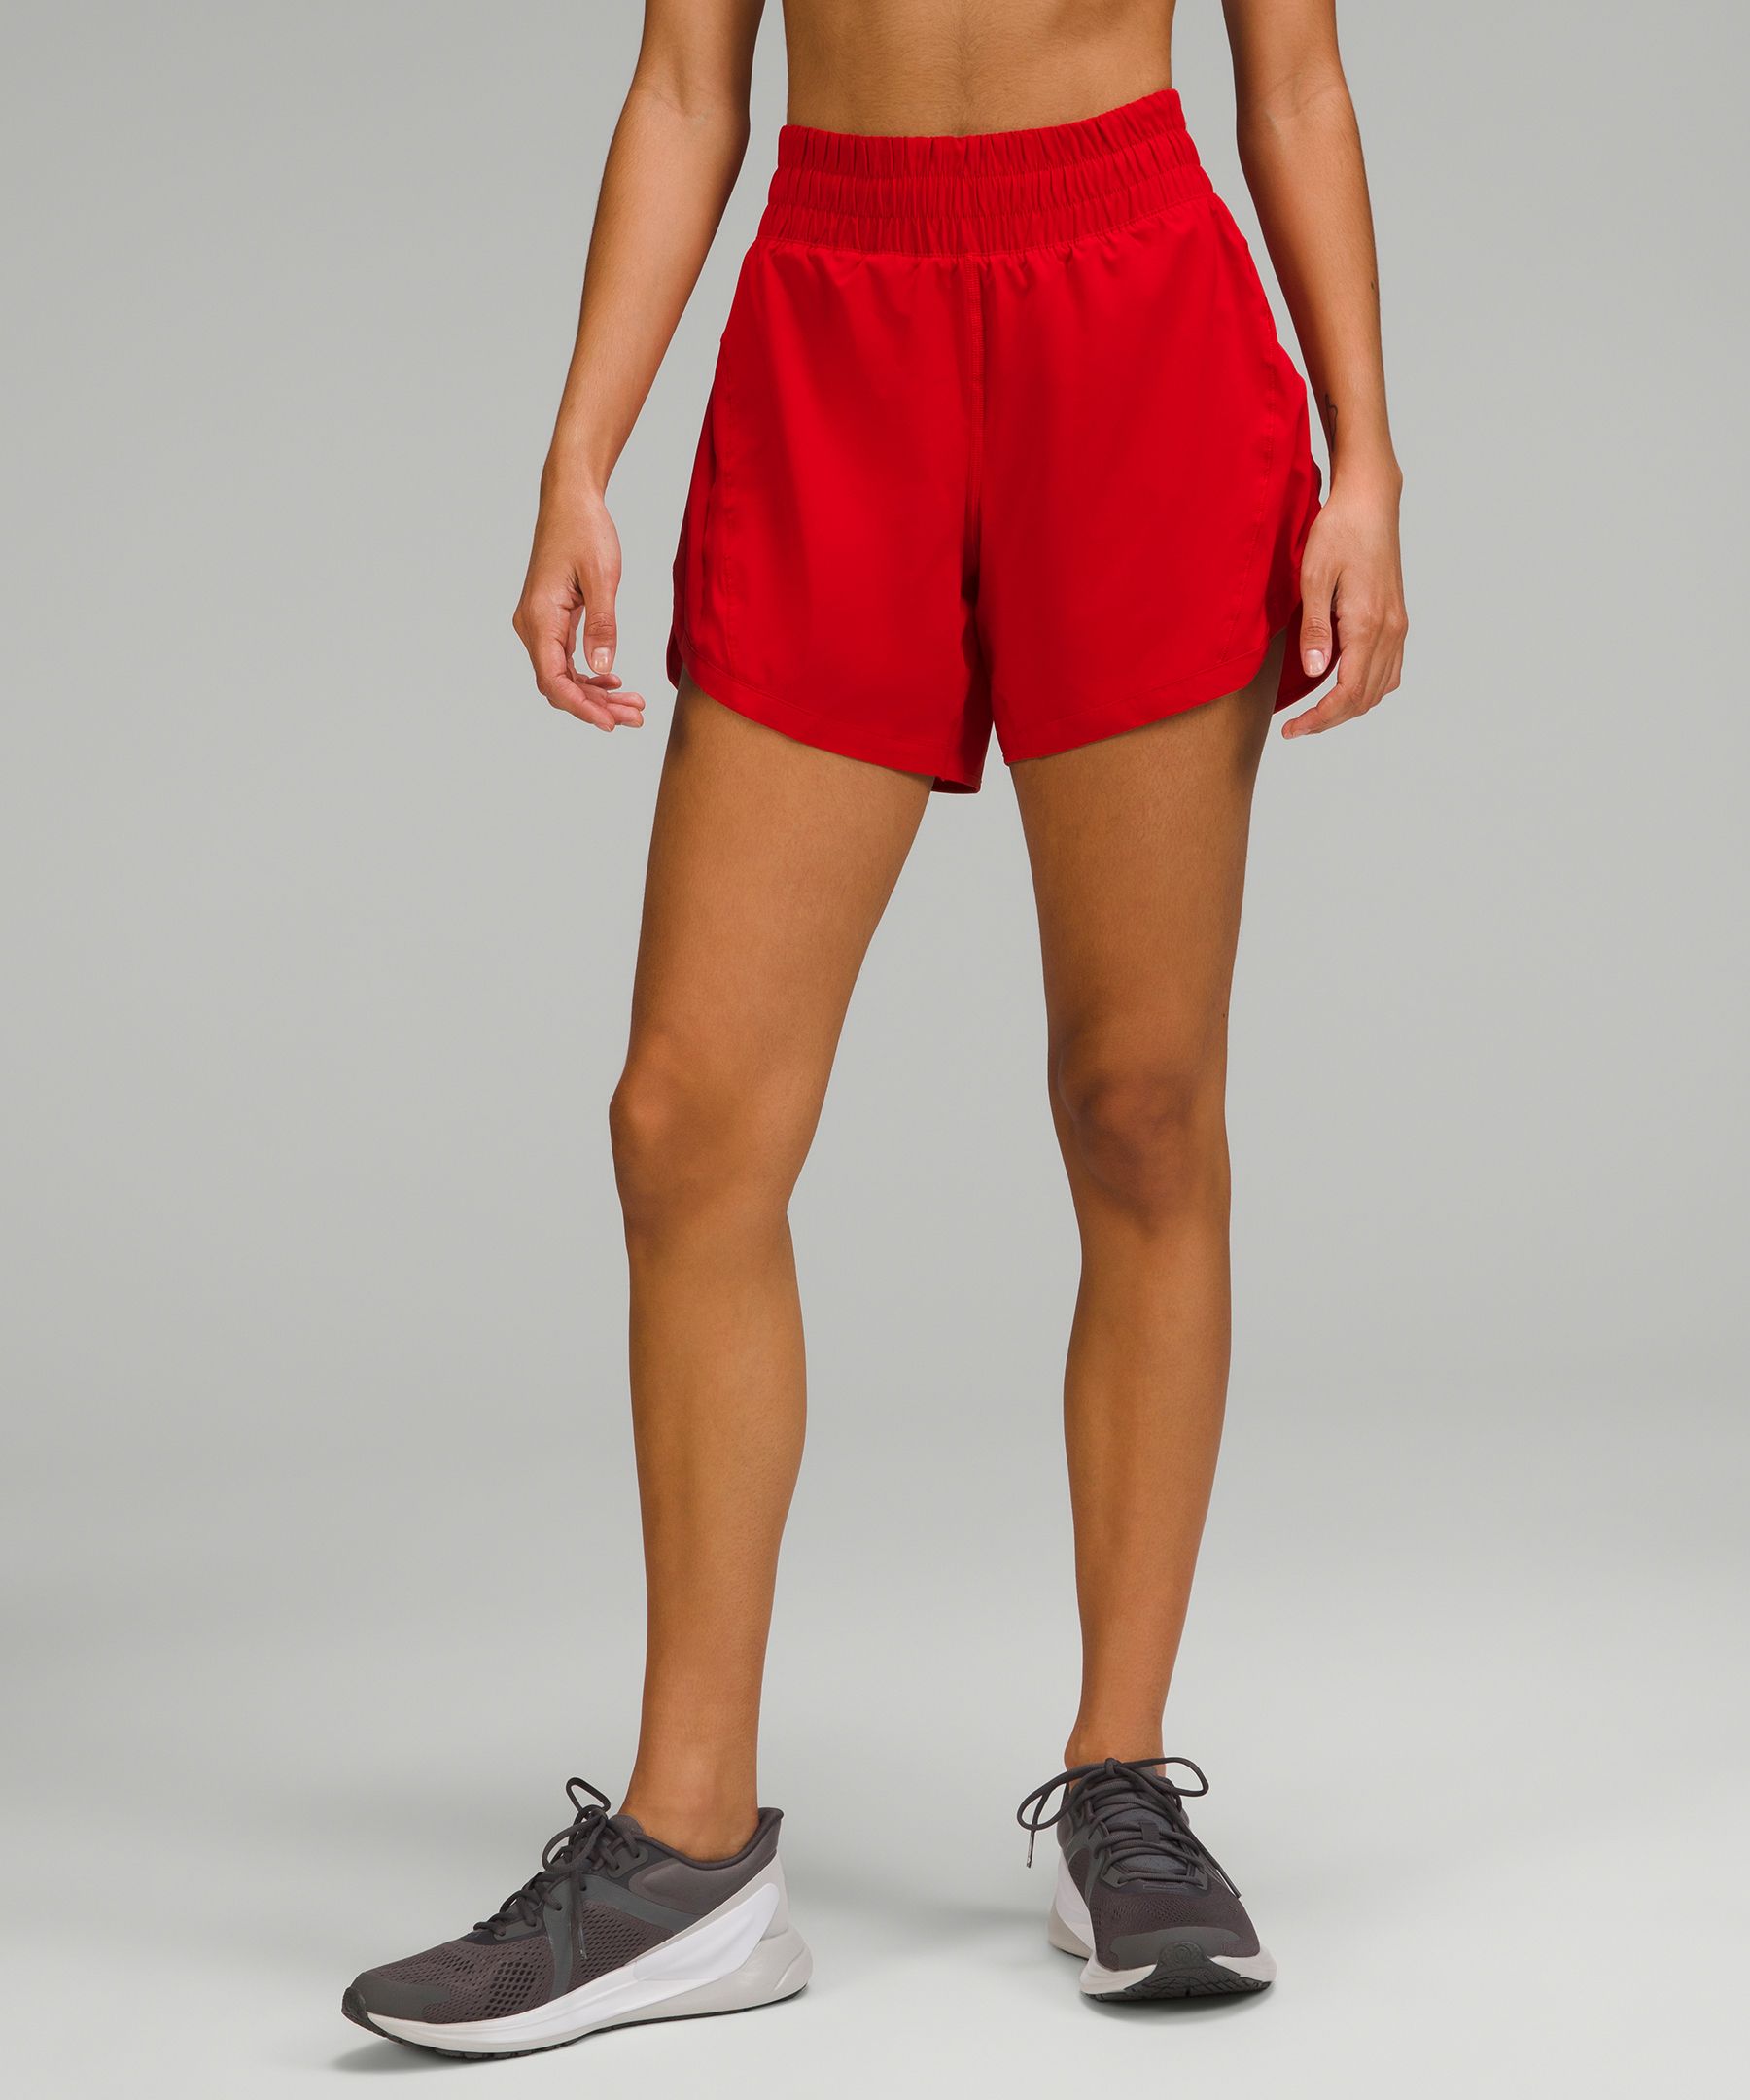  Attifall Women's High Waisted Running Shorts,2.5'' / 4